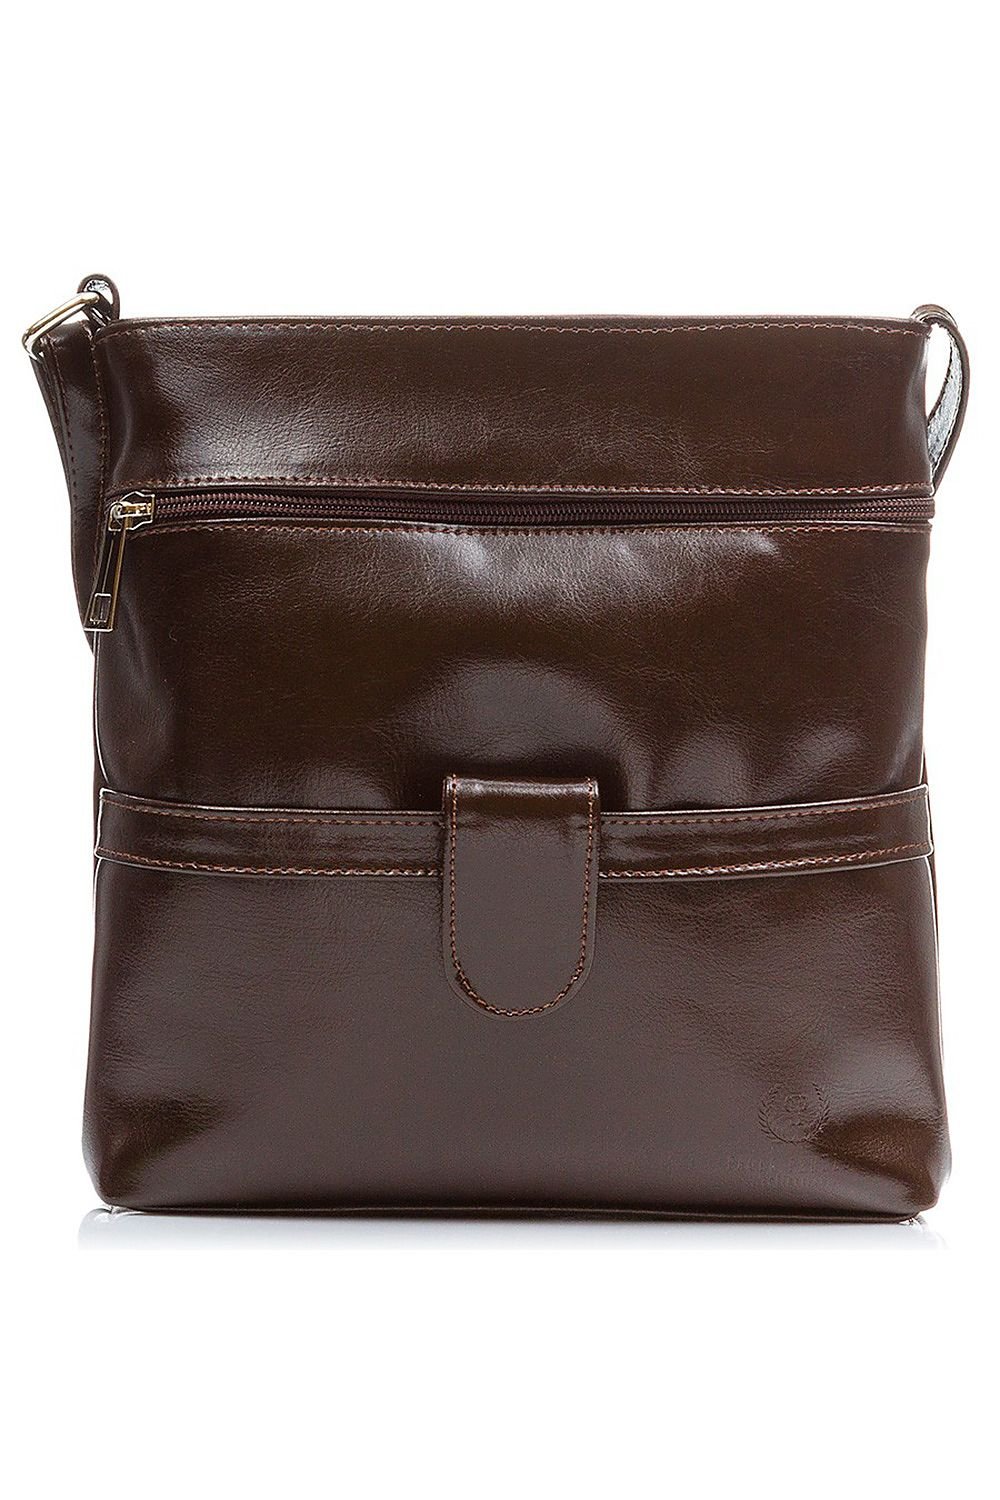 Natural leather bag model 173191 Galanter